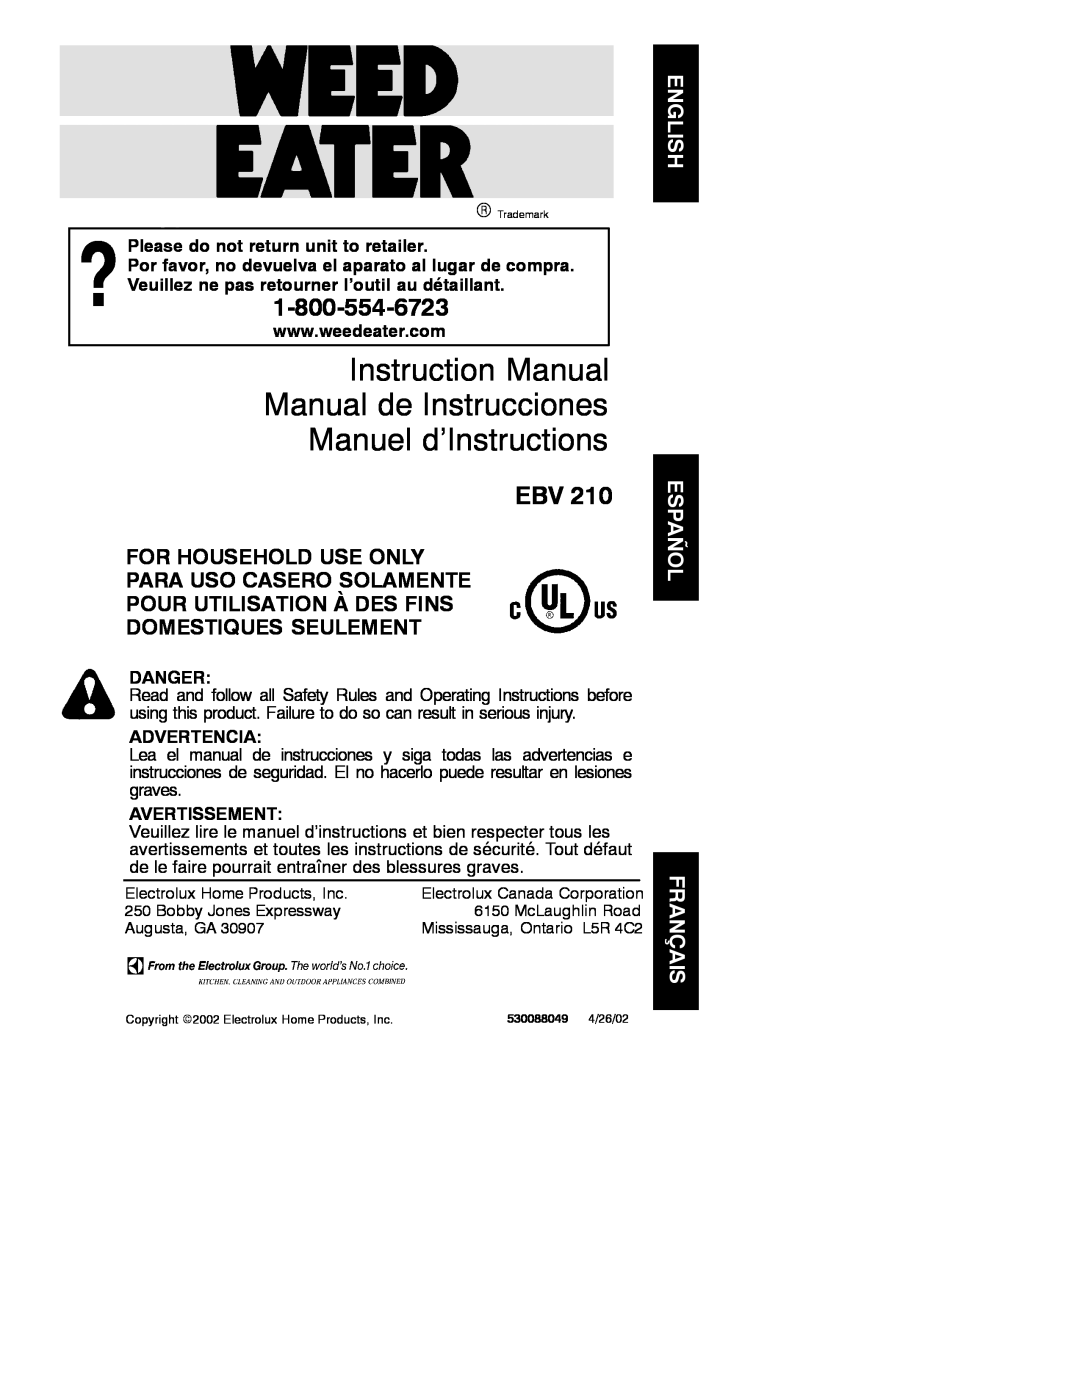 Weed Eater 530088049, EBV 210 instruction manual Please do not return unit to retailer, Danger, Advertencia, Avertissement 